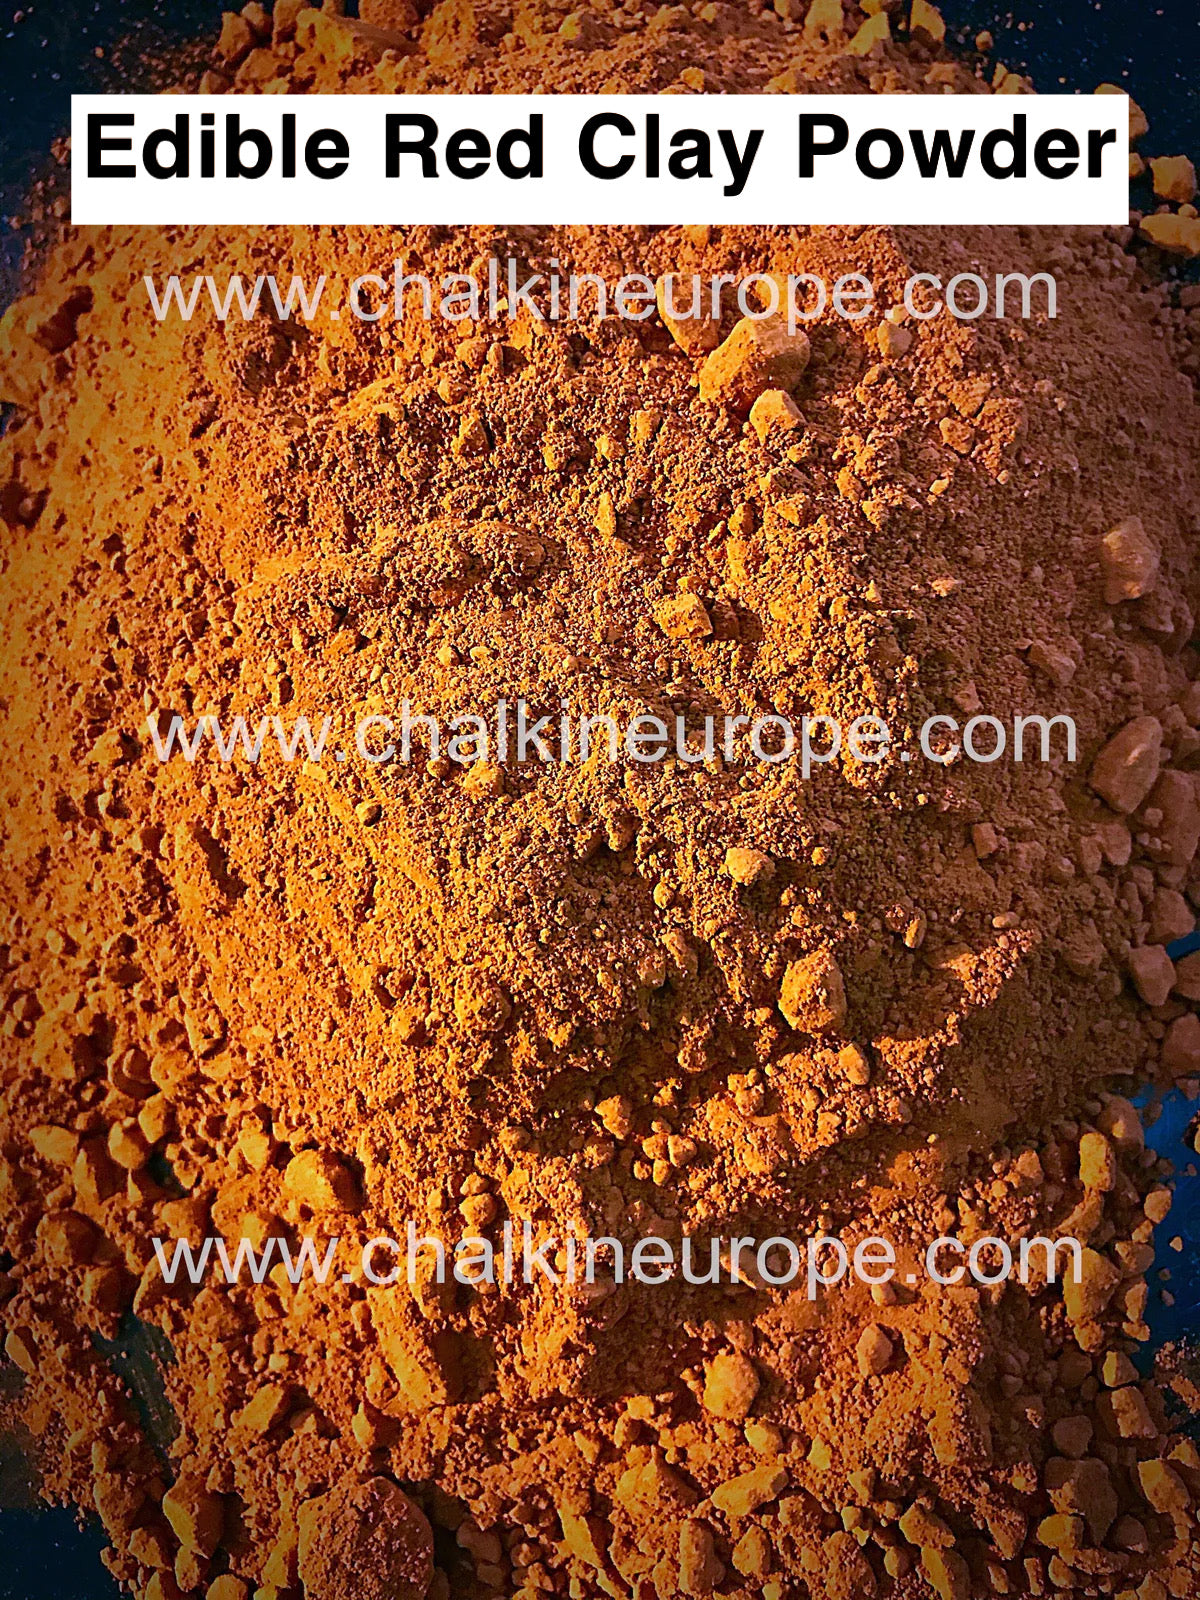 Polvo de arcilla roja comestible - Chalkineurope